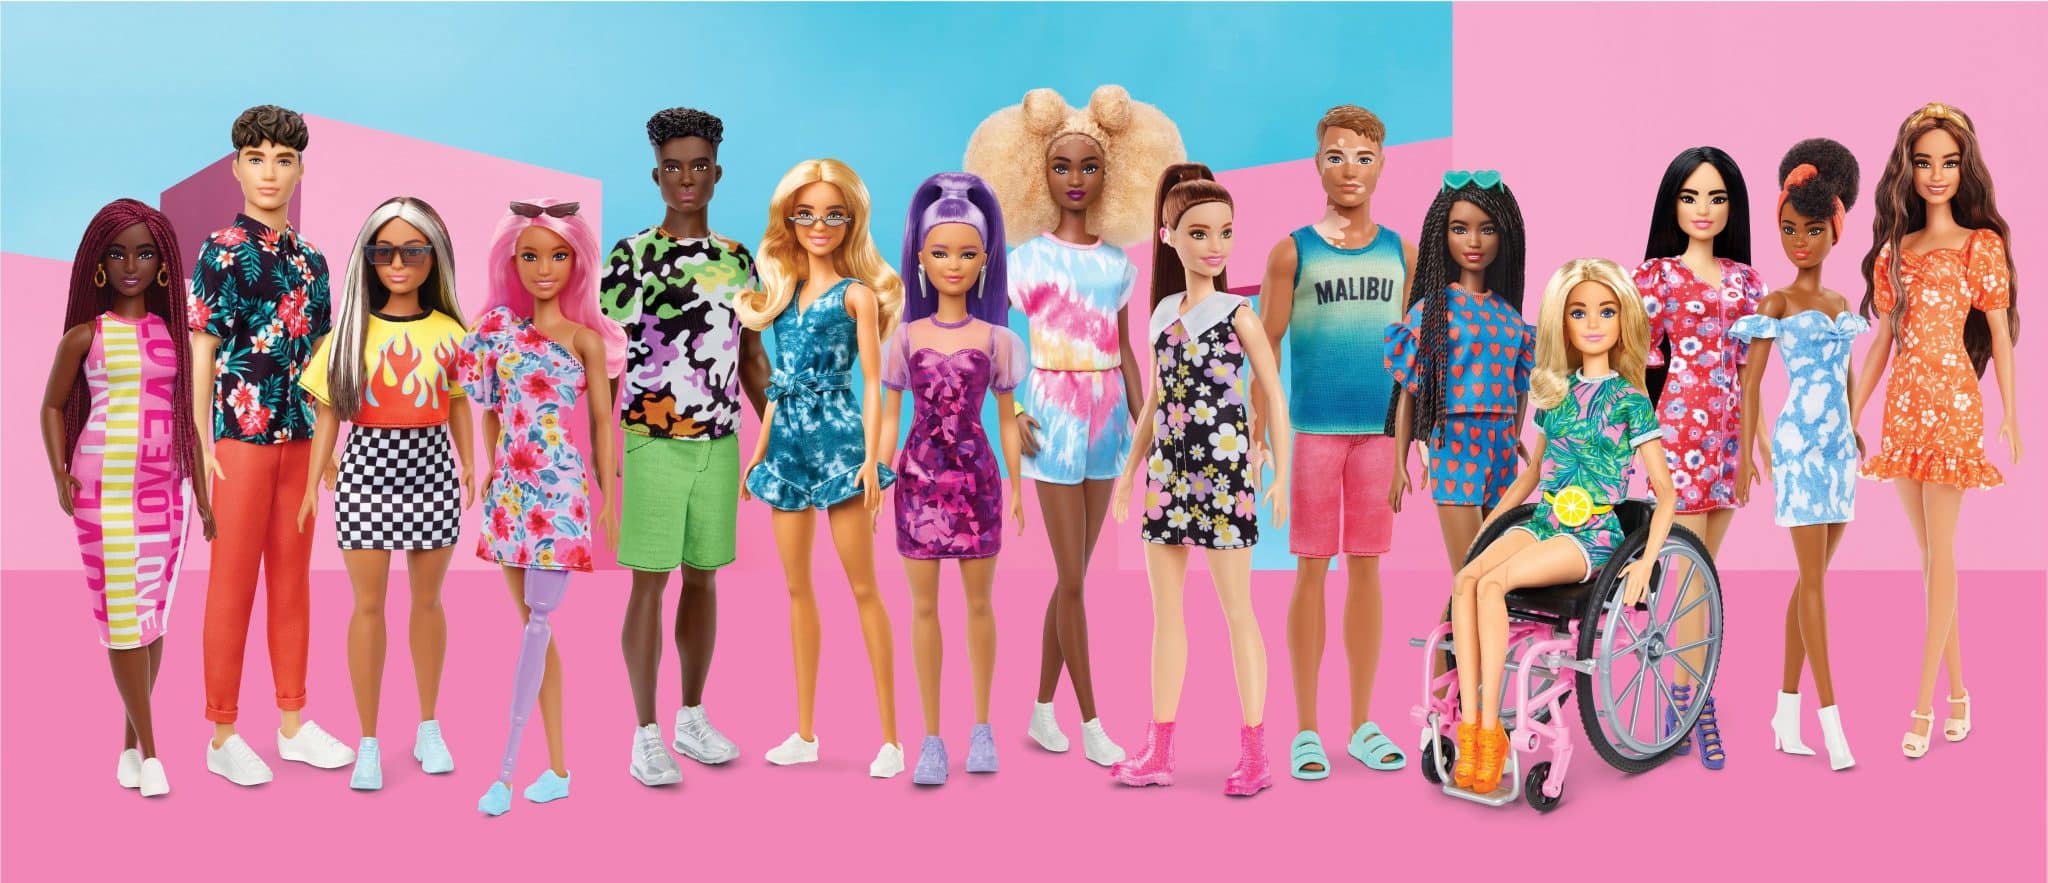 Barbie lança novas bonecas inclusivas com vitiligo e até careca